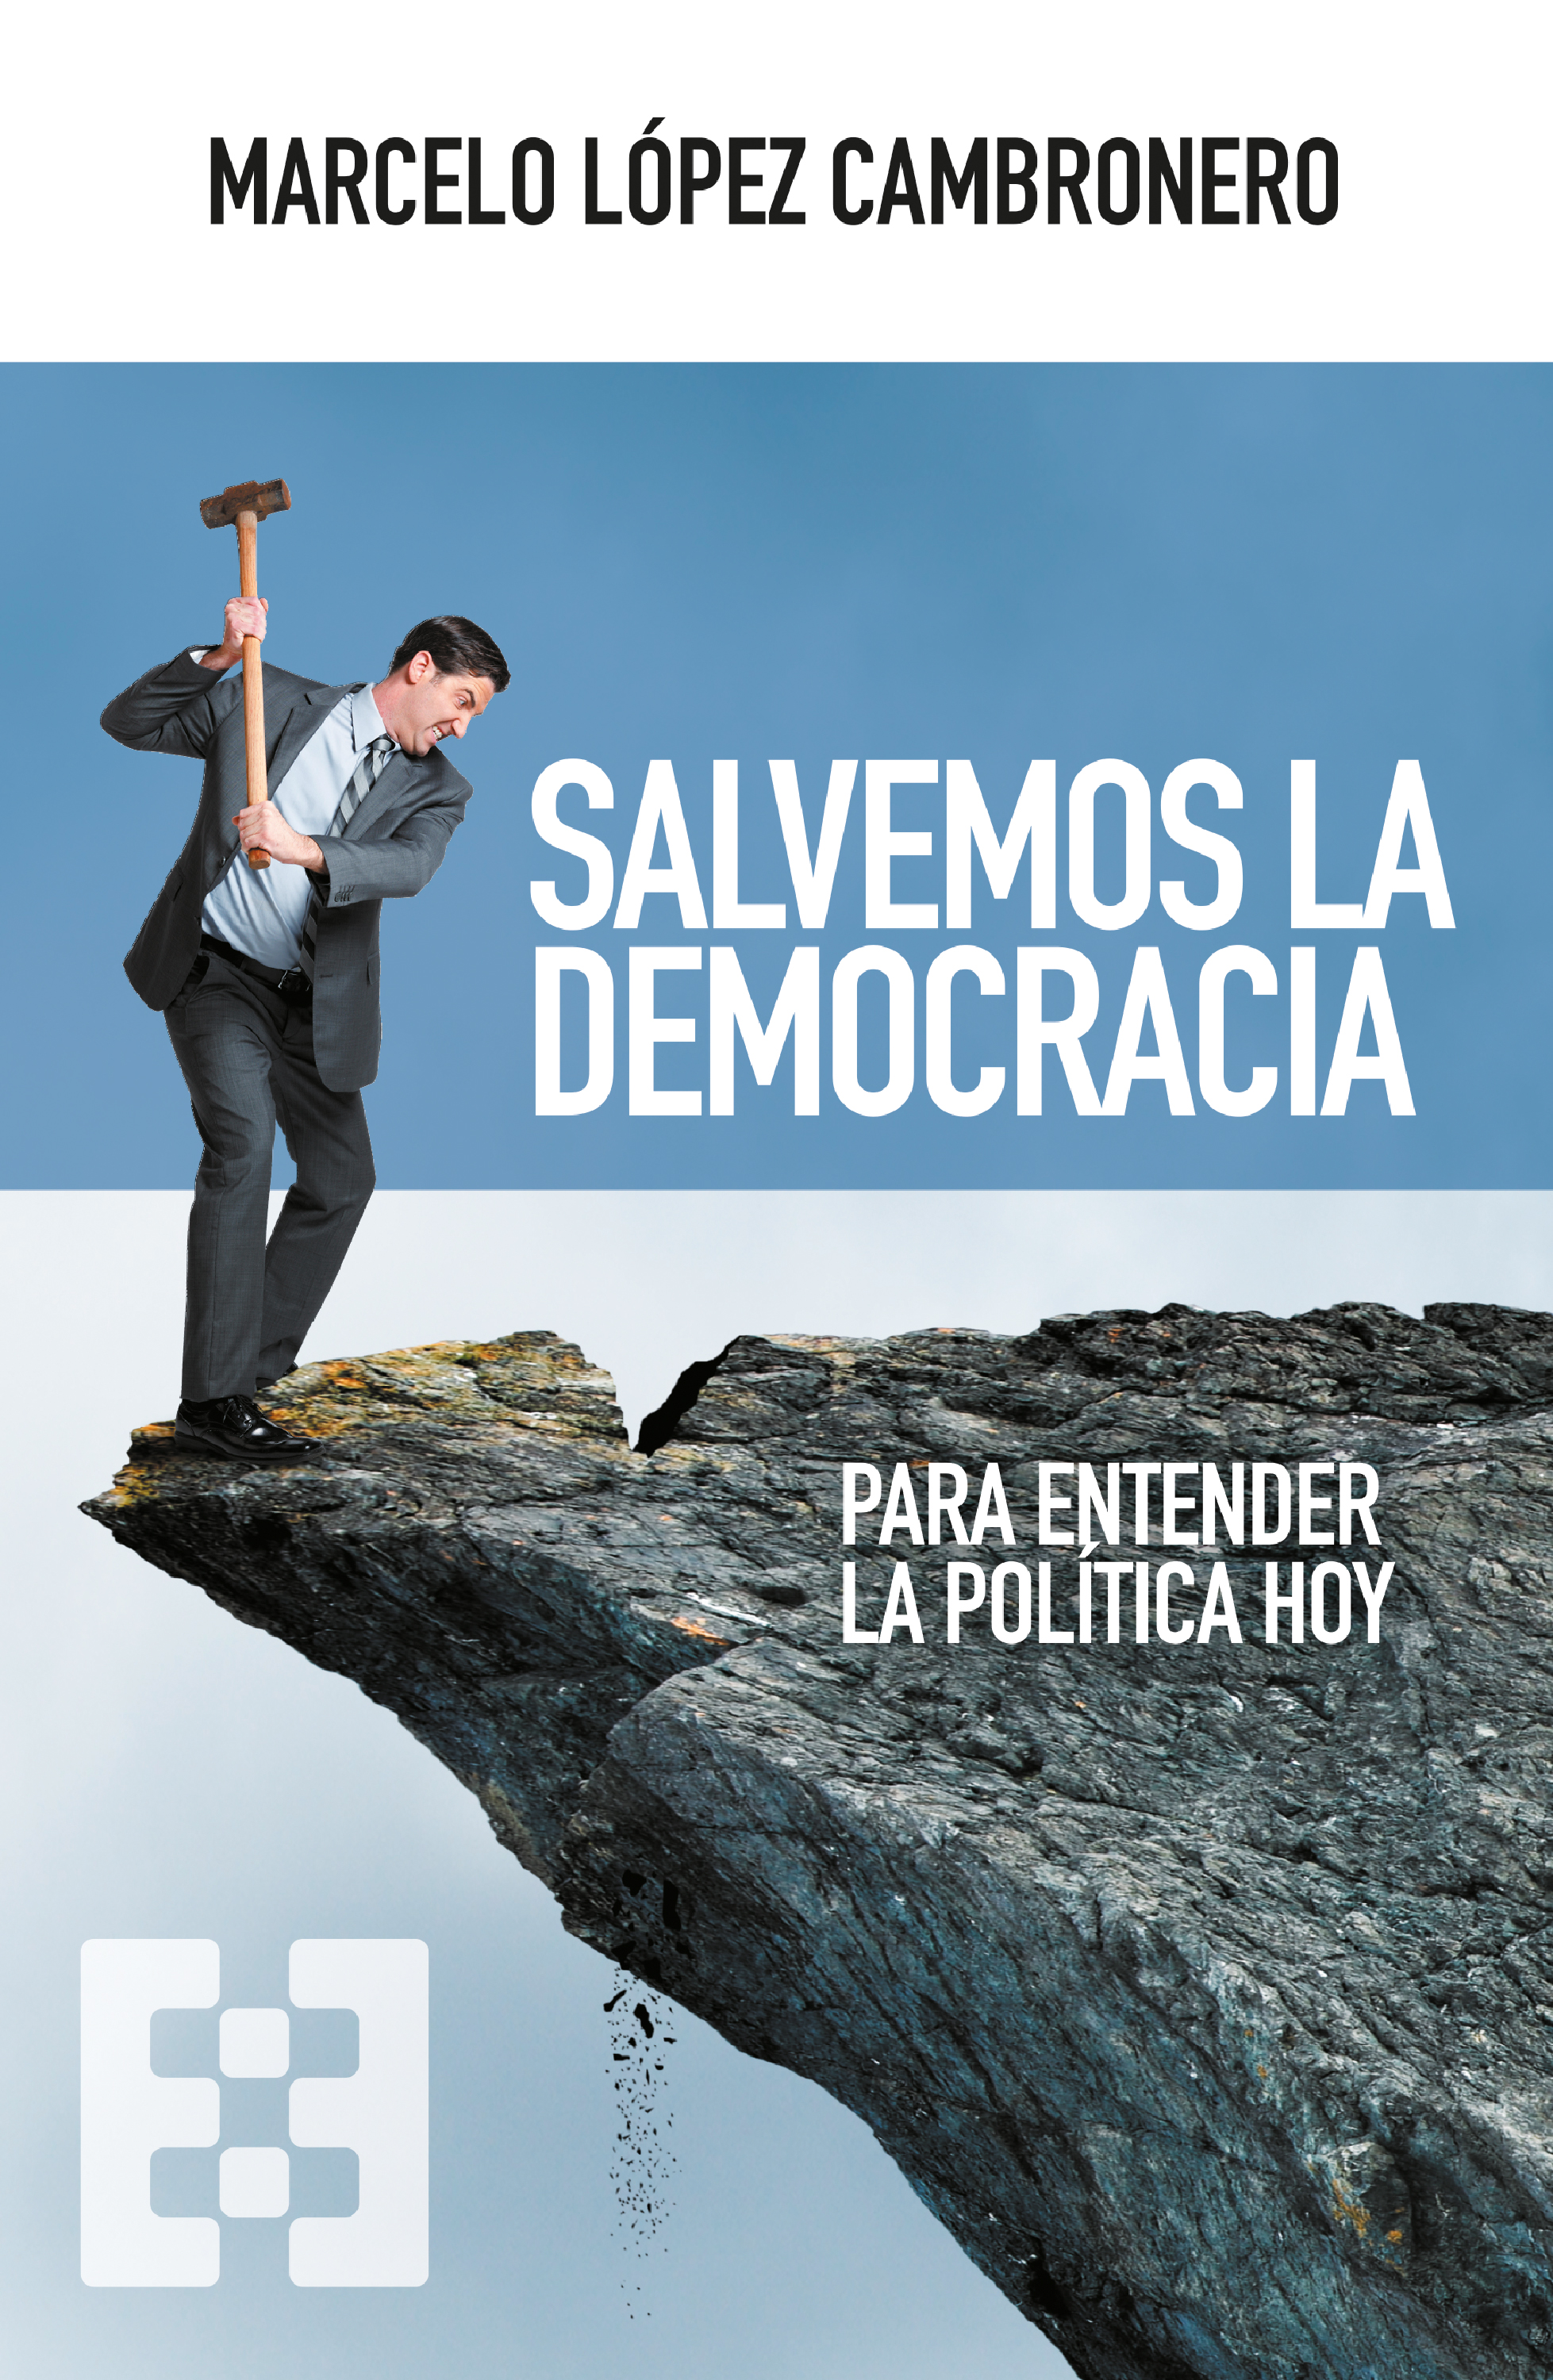 Salvemos la democracia   «Para entender la política hoy»